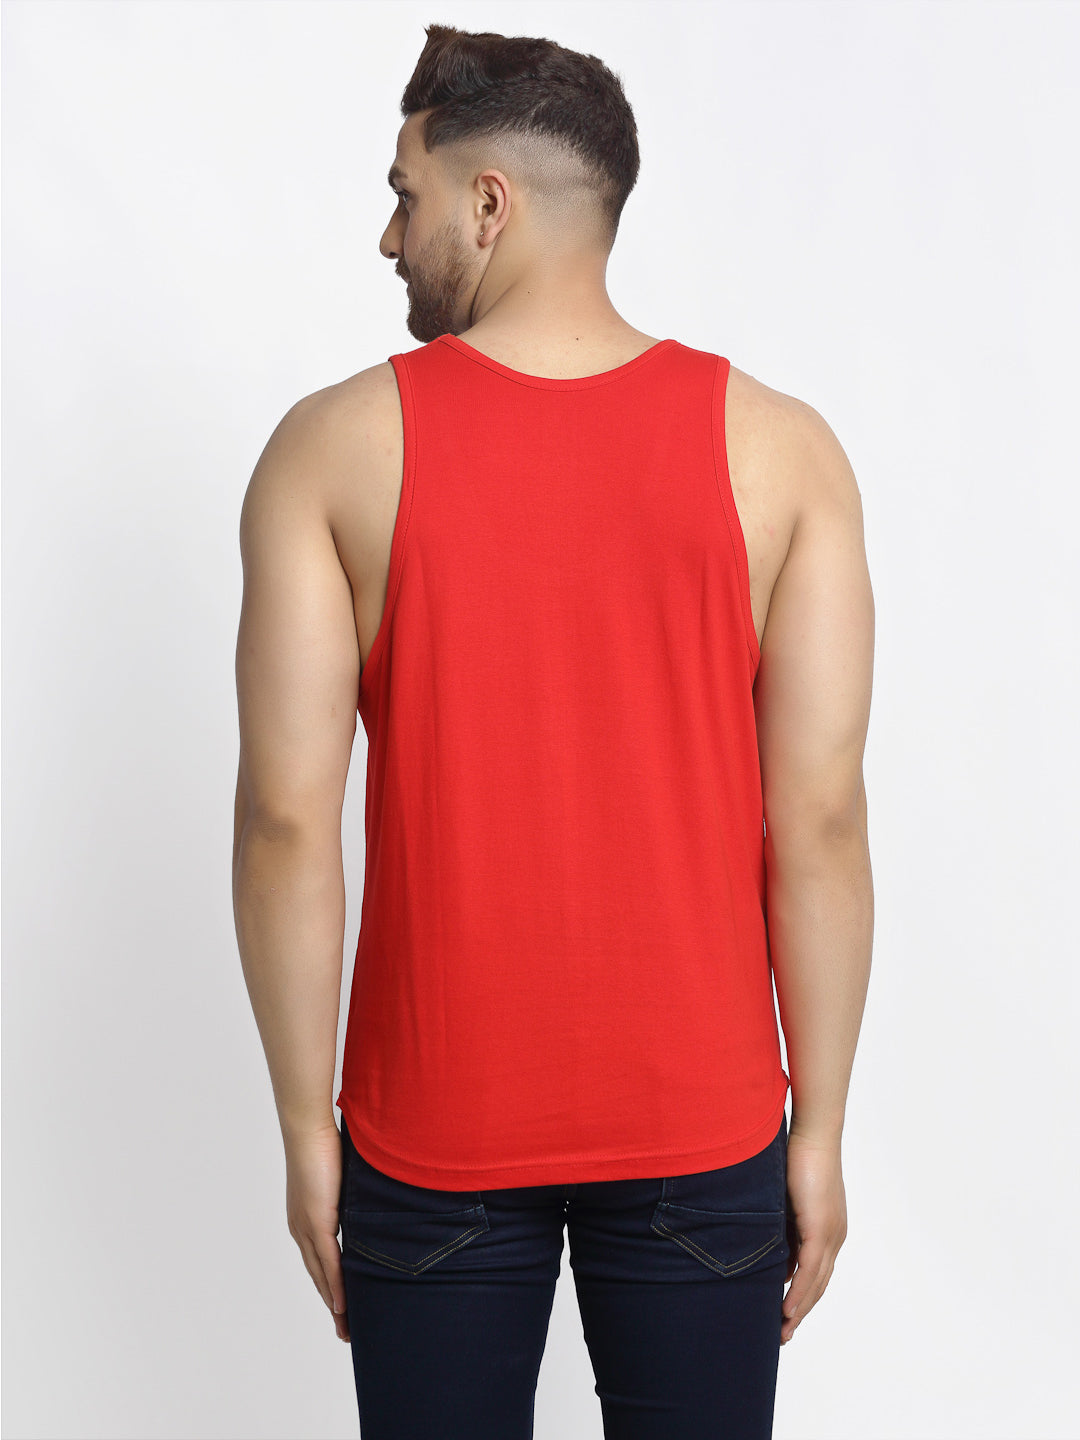 Men's Pack of 2 Blak & Red Printed Gym vest - Friskers